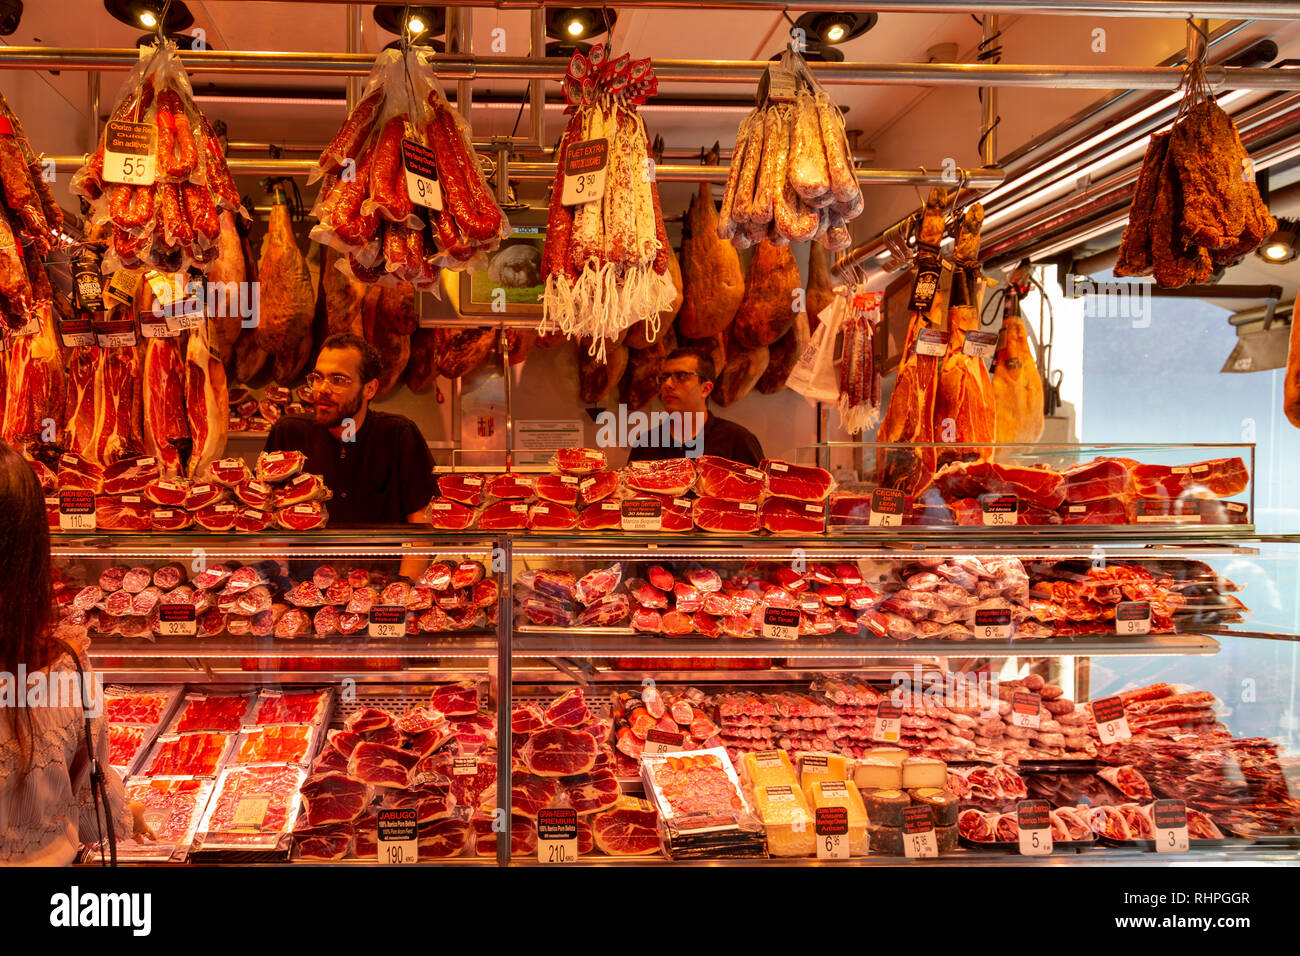 Jamon (ham) auf einen Shop in La Boqueria, der berühmte Markt neben der Rambla von Barcelona, Katalonien, Spanien hängen Stockfoto